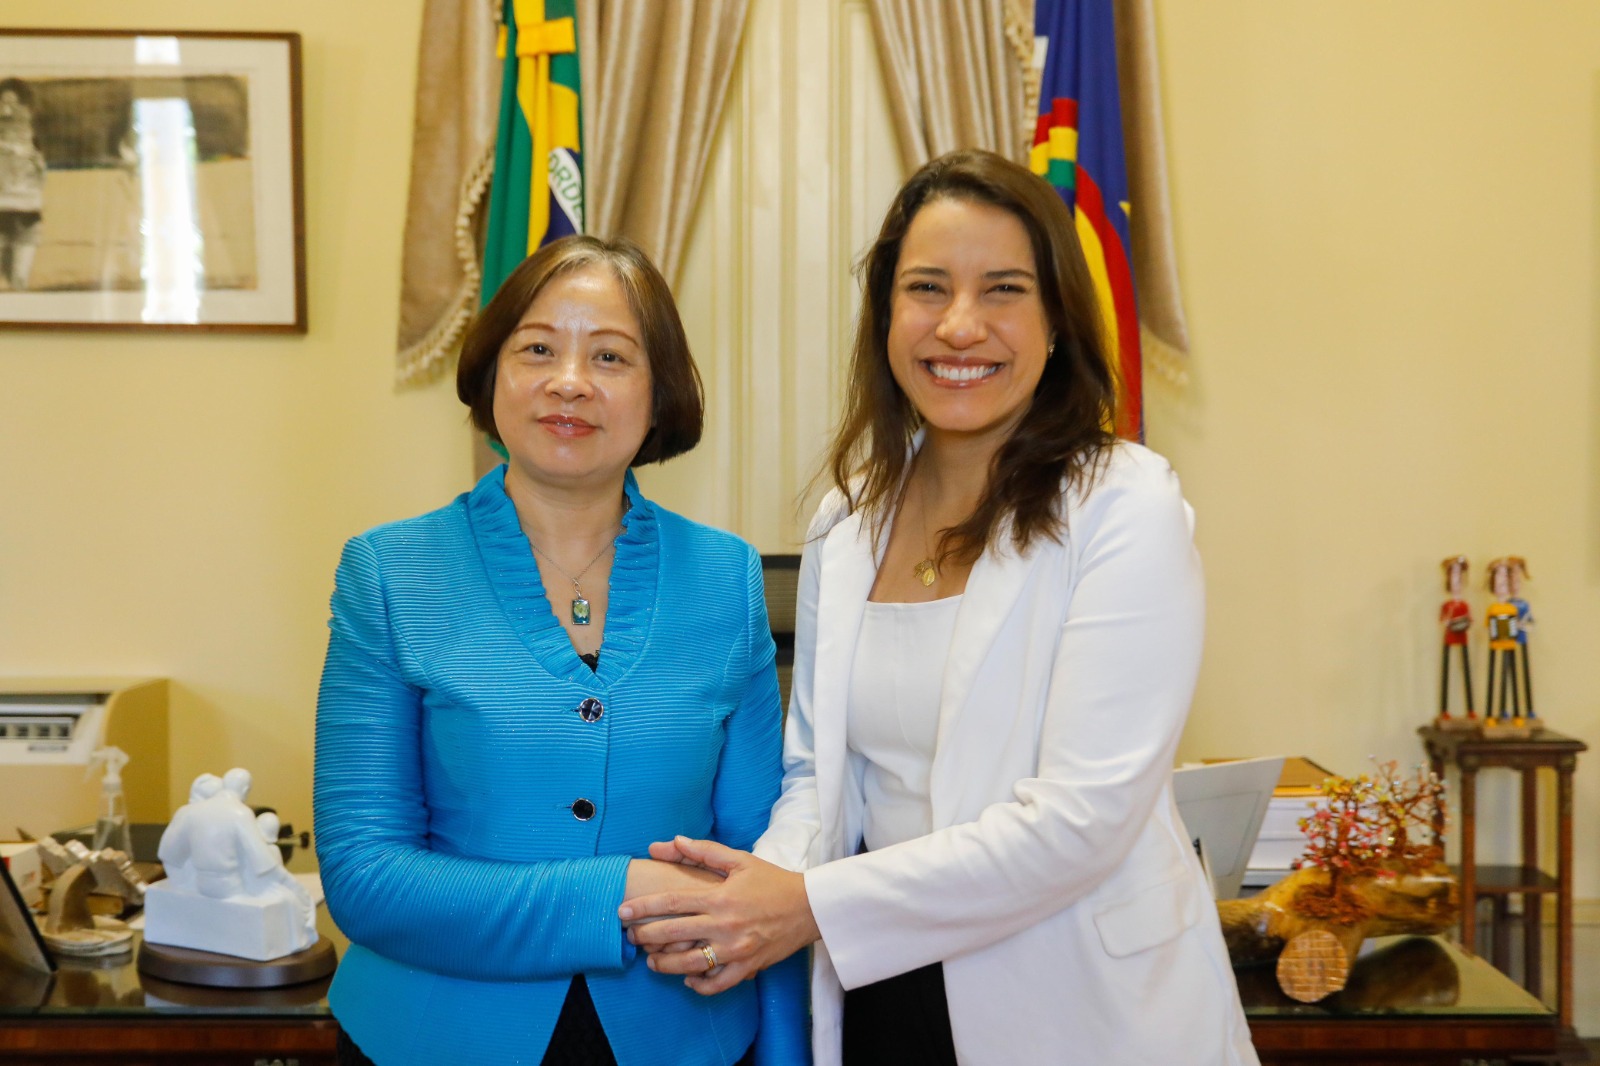  Governadora Raquel Lyra destaca potencial econômico de Pernambuco em encontro com nova cônsul-geral da China no Recife